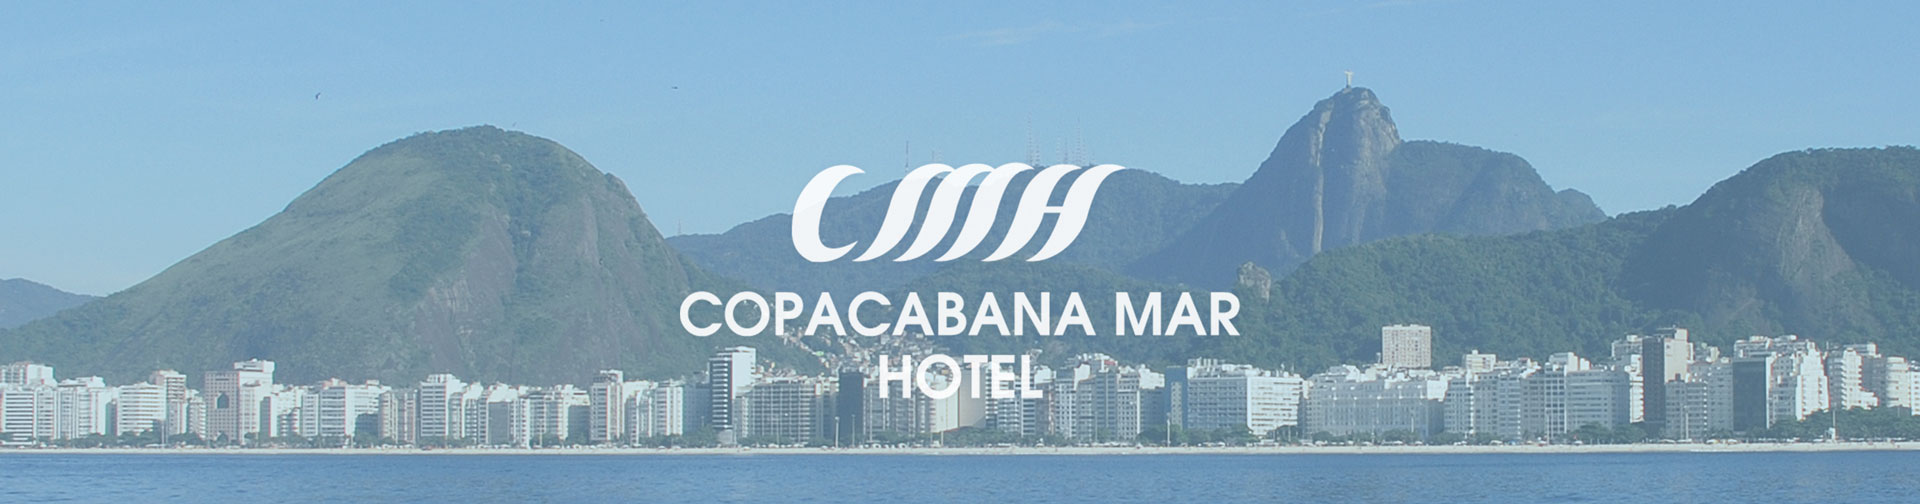 Copacabana Mar Hotel - panoramica